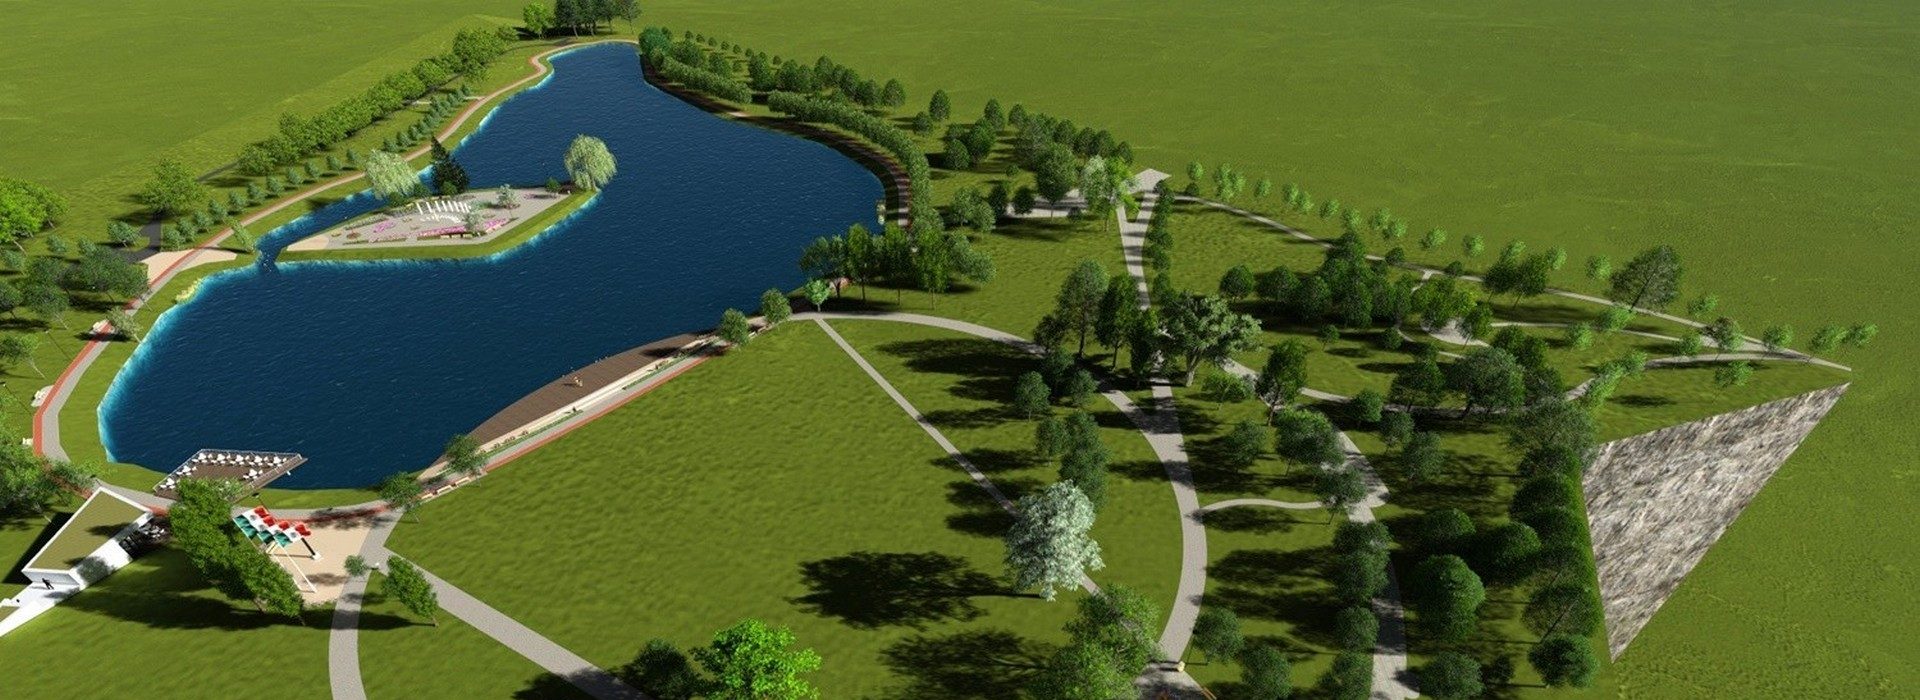 Tatabánya legnagyobb parkját alakítják modern közösségi ponttá